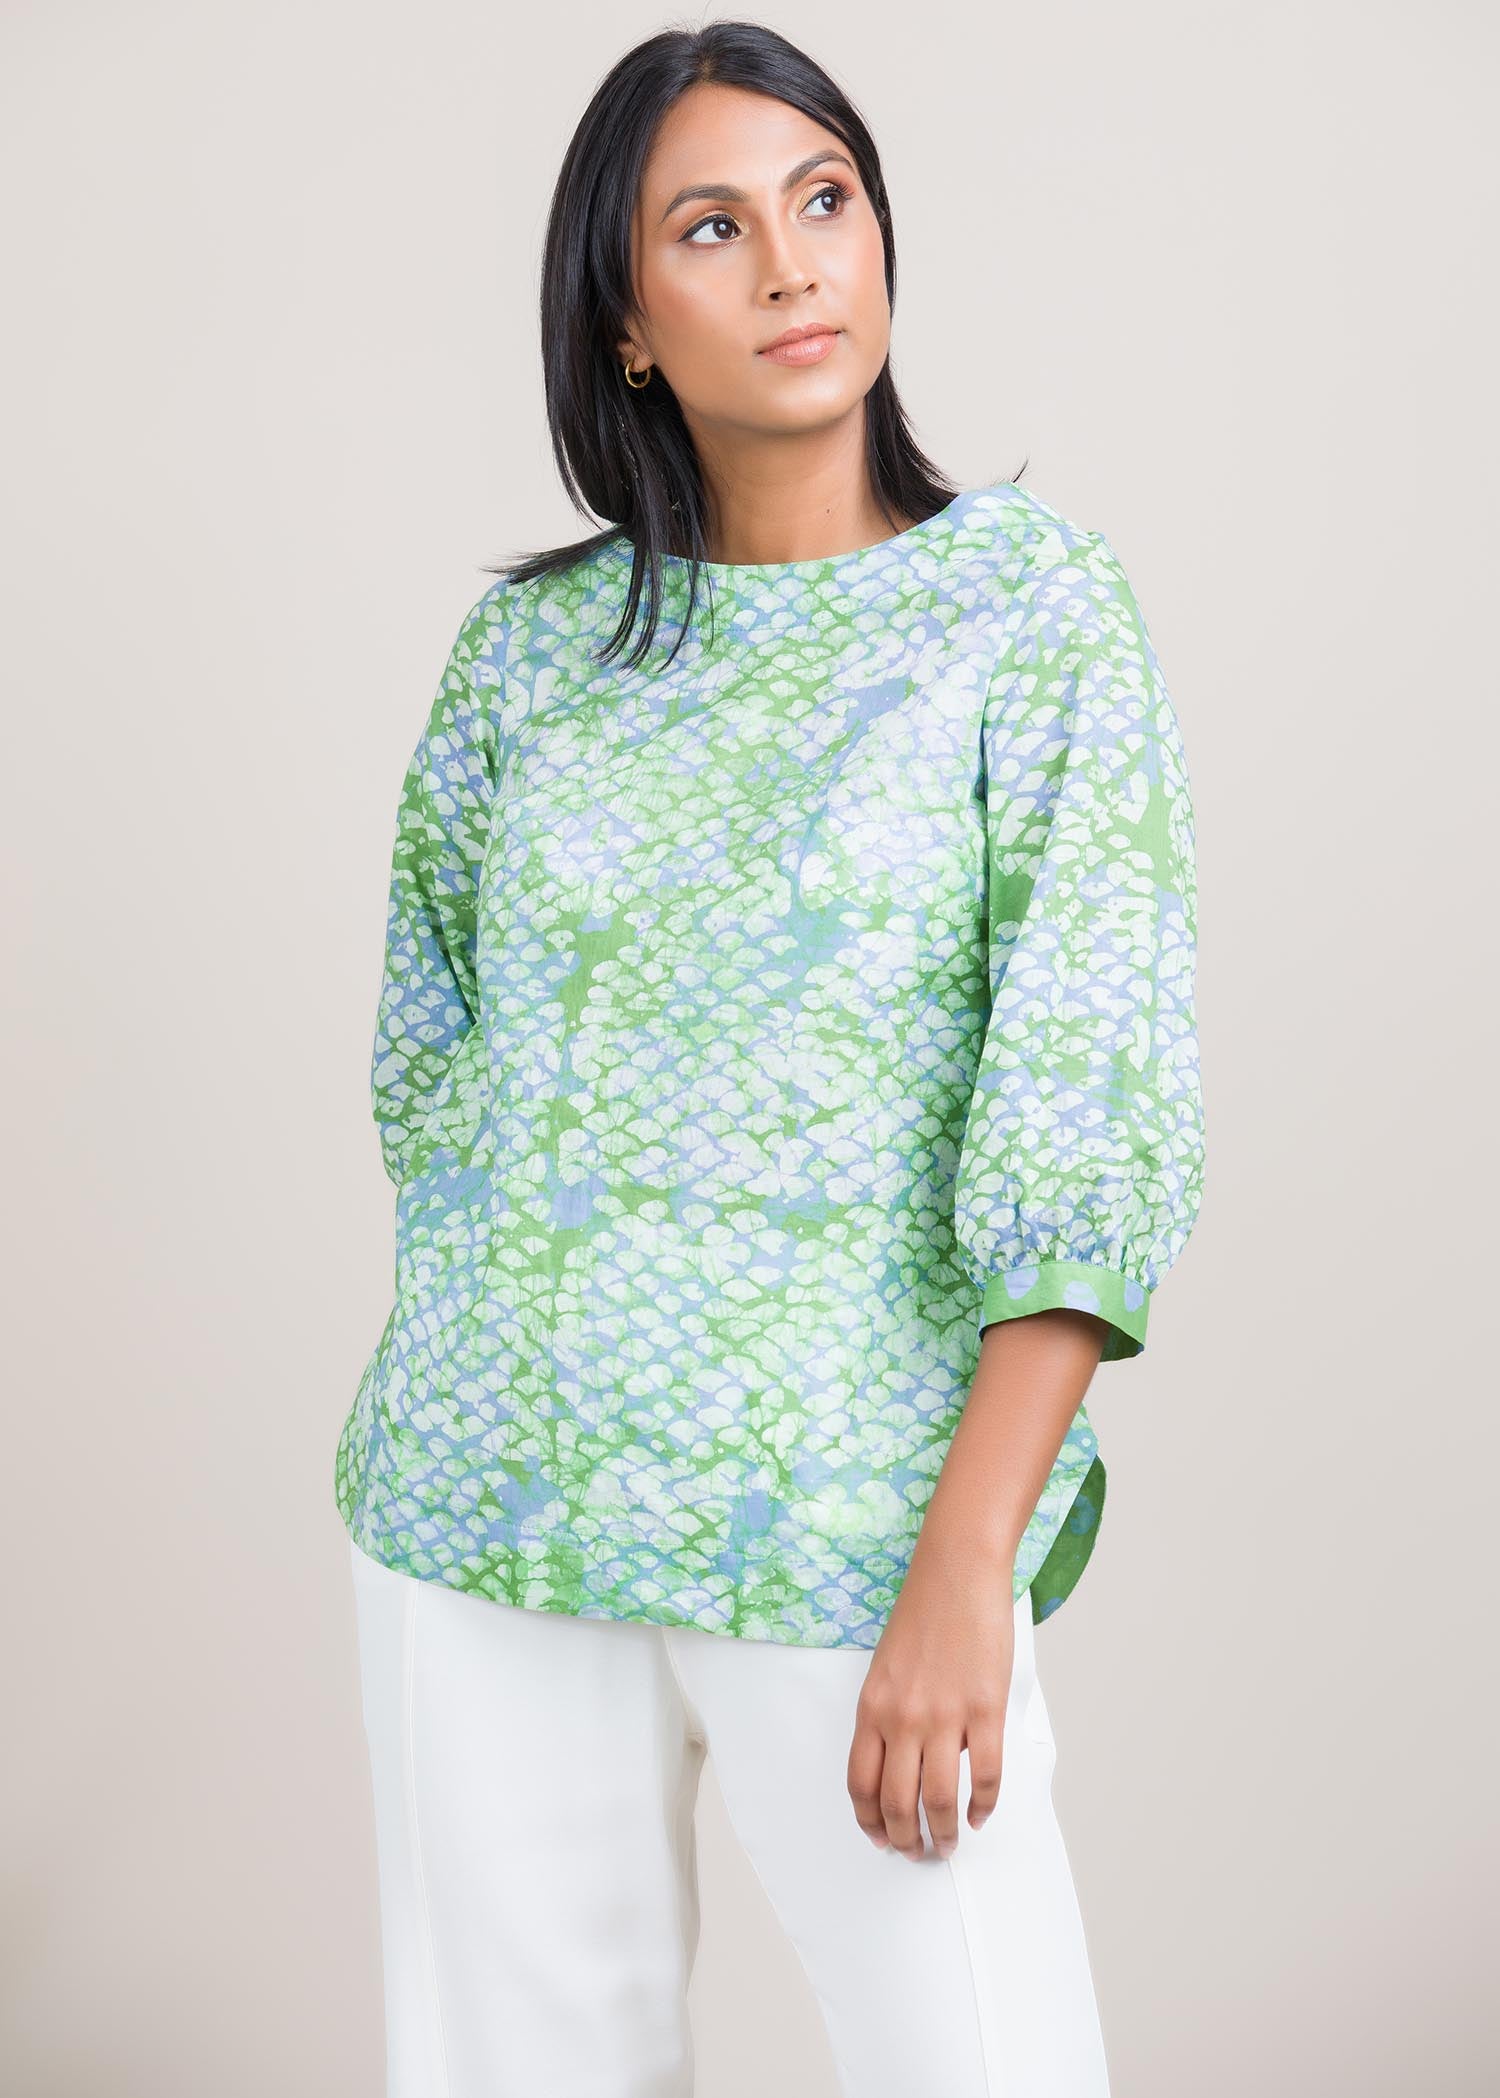 spots batik printed blouse